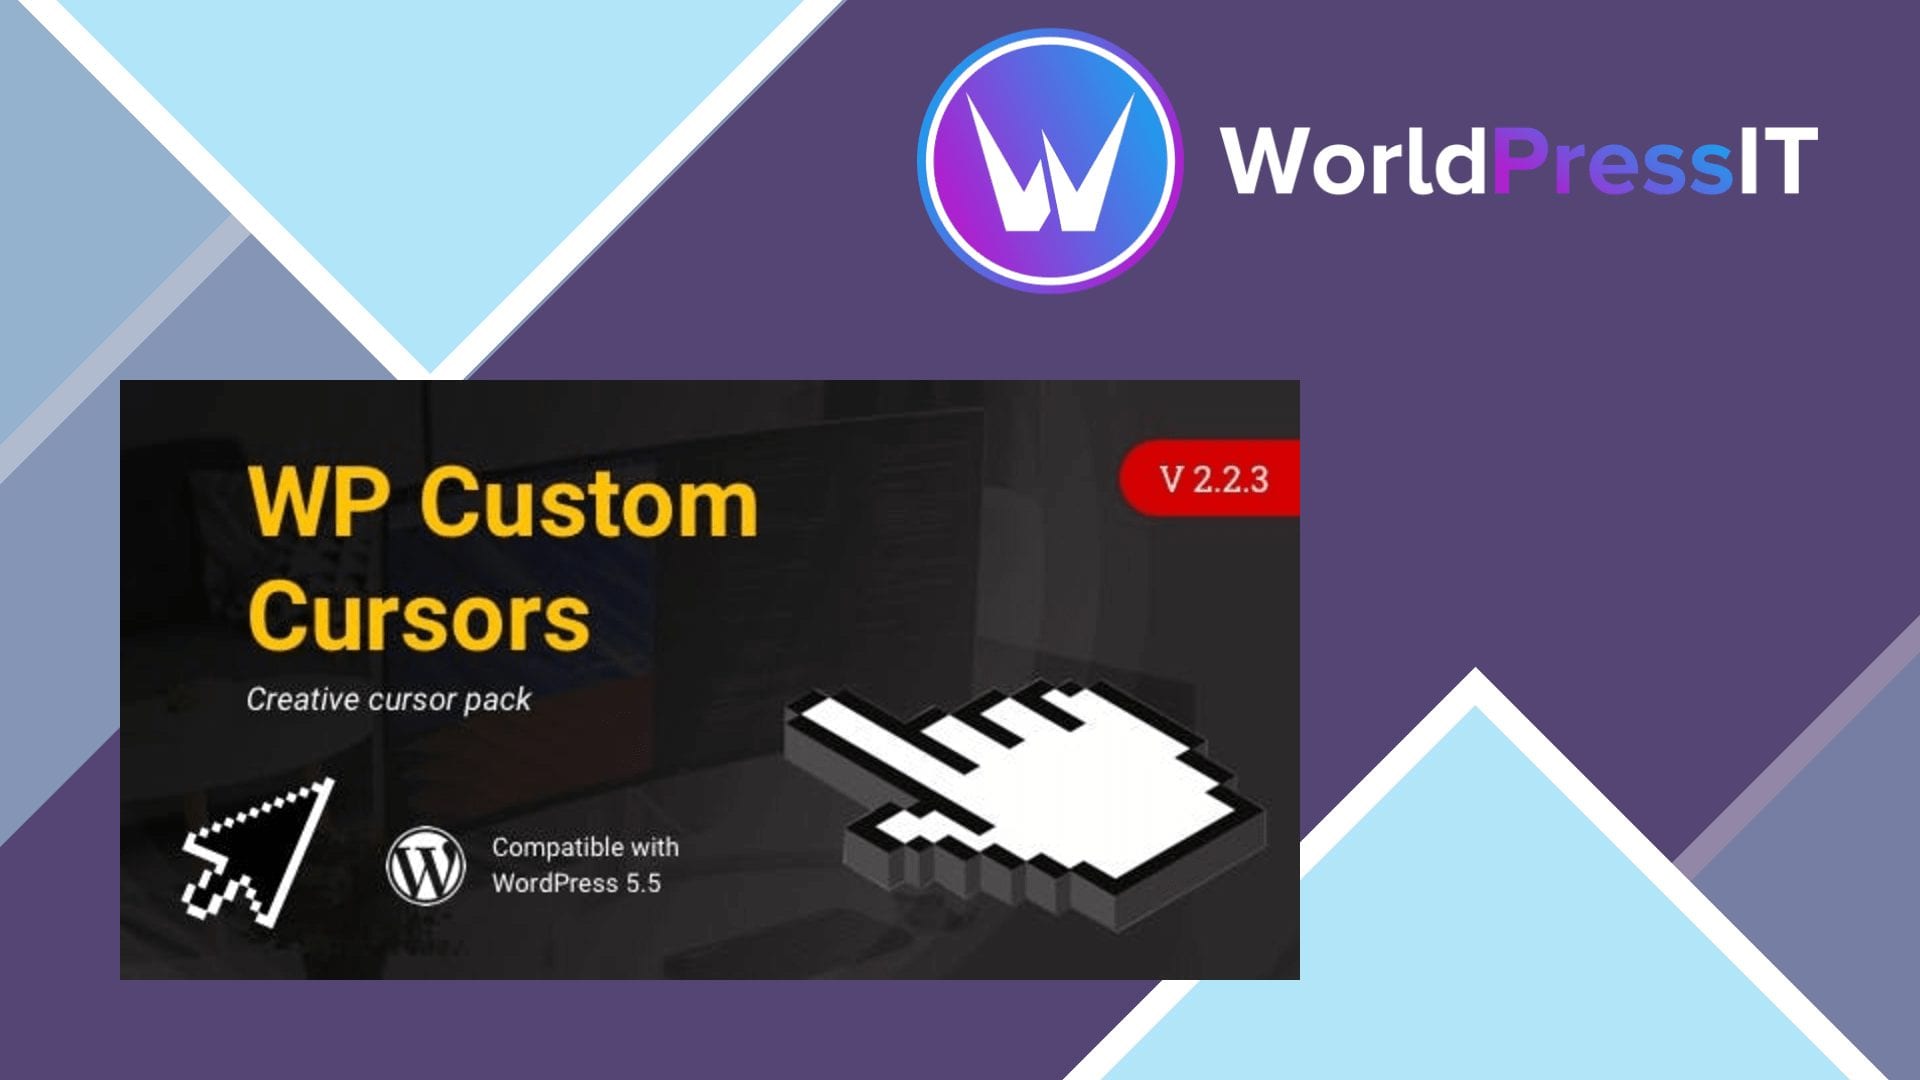 WP Custom Cursors Plugin - WorldPress IT